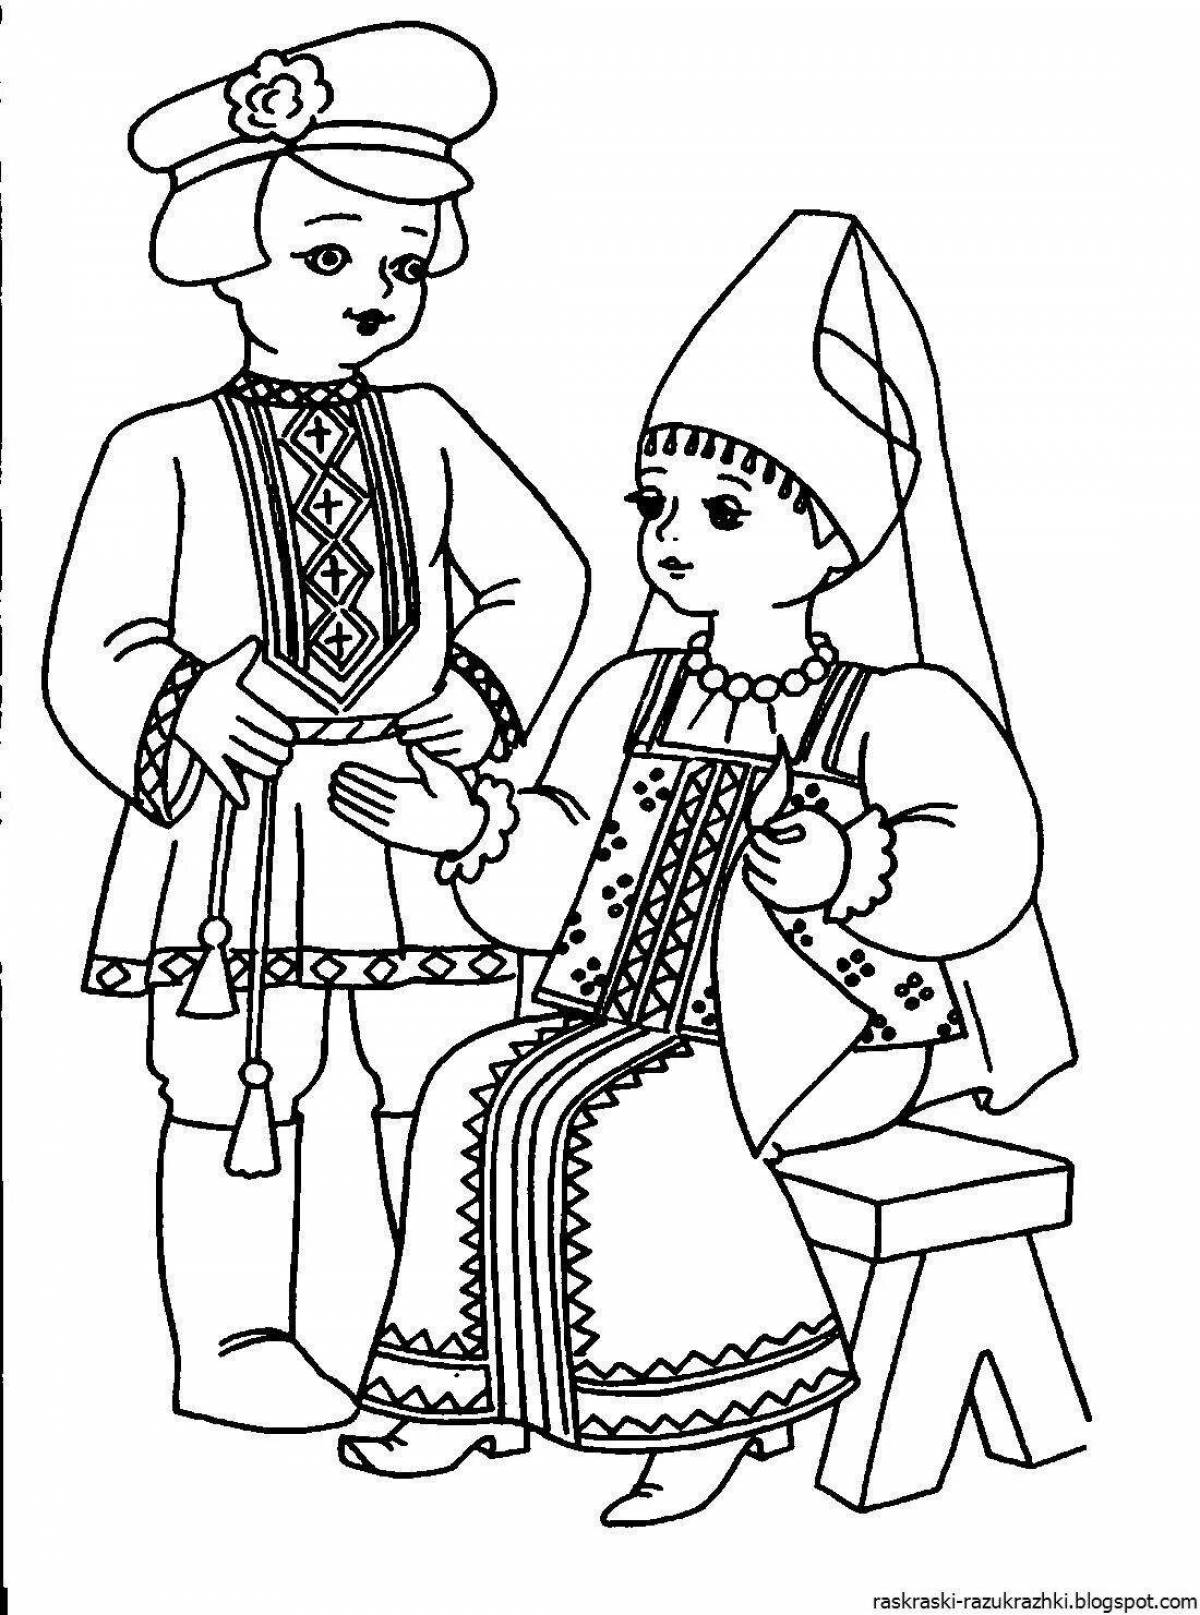 Рисунок на тему русско народные костюмы